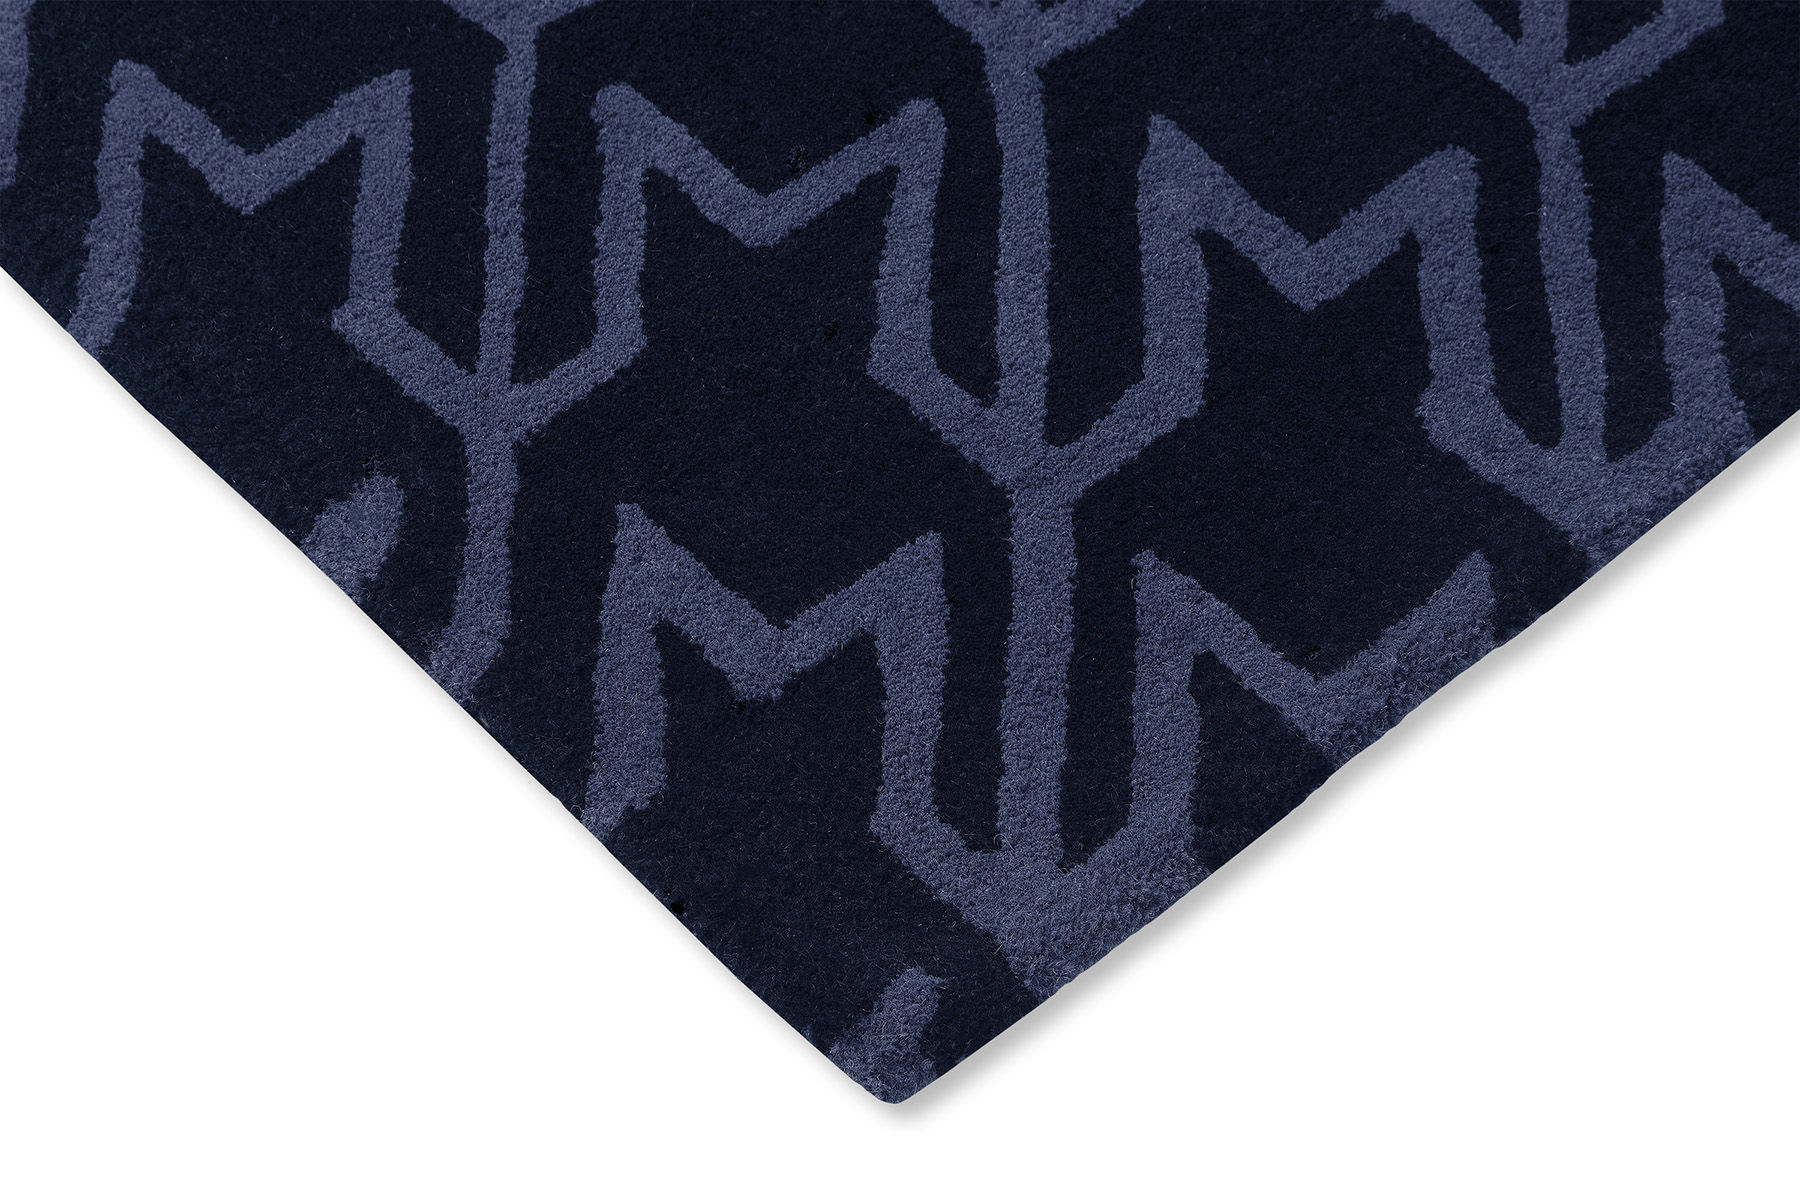 Houndstooth Dark Blue Designer Rug ☞ Size: 5' 7" x 8' (170 x 240 cm)